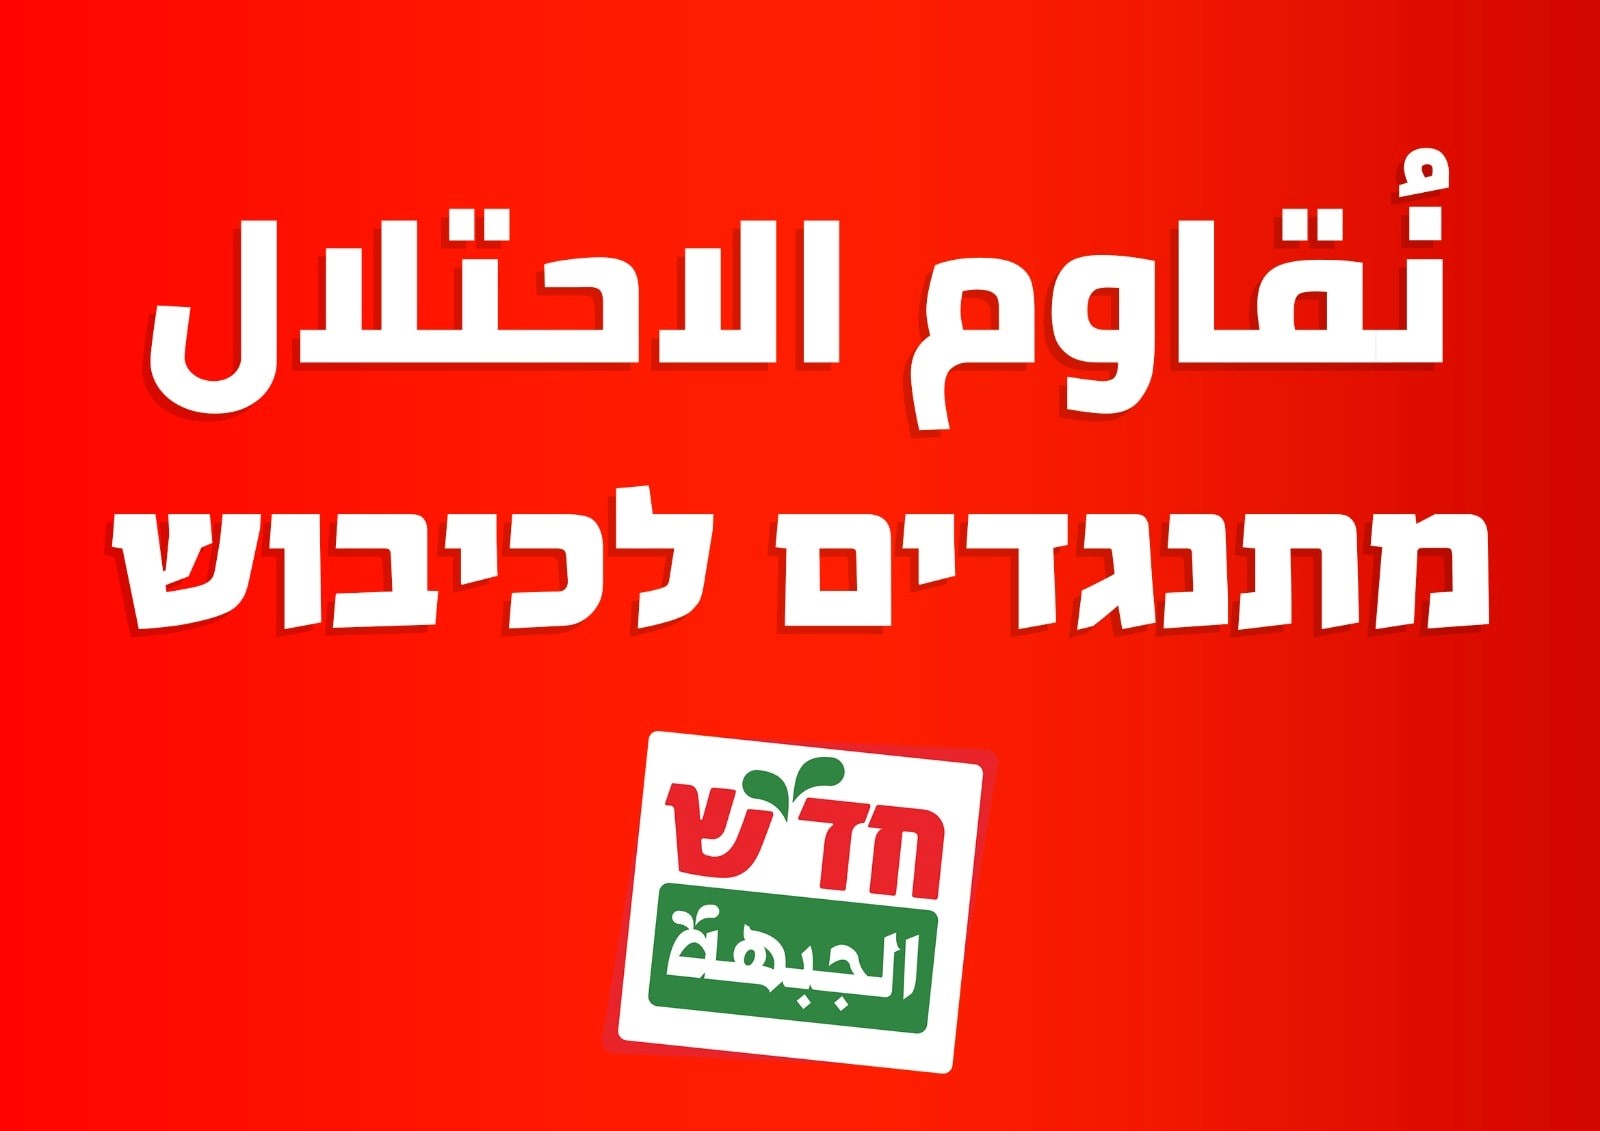 חד"ש ומק"י קוראות להשתתף בהפגנה נגד הכיבוש בכיכר הבימה